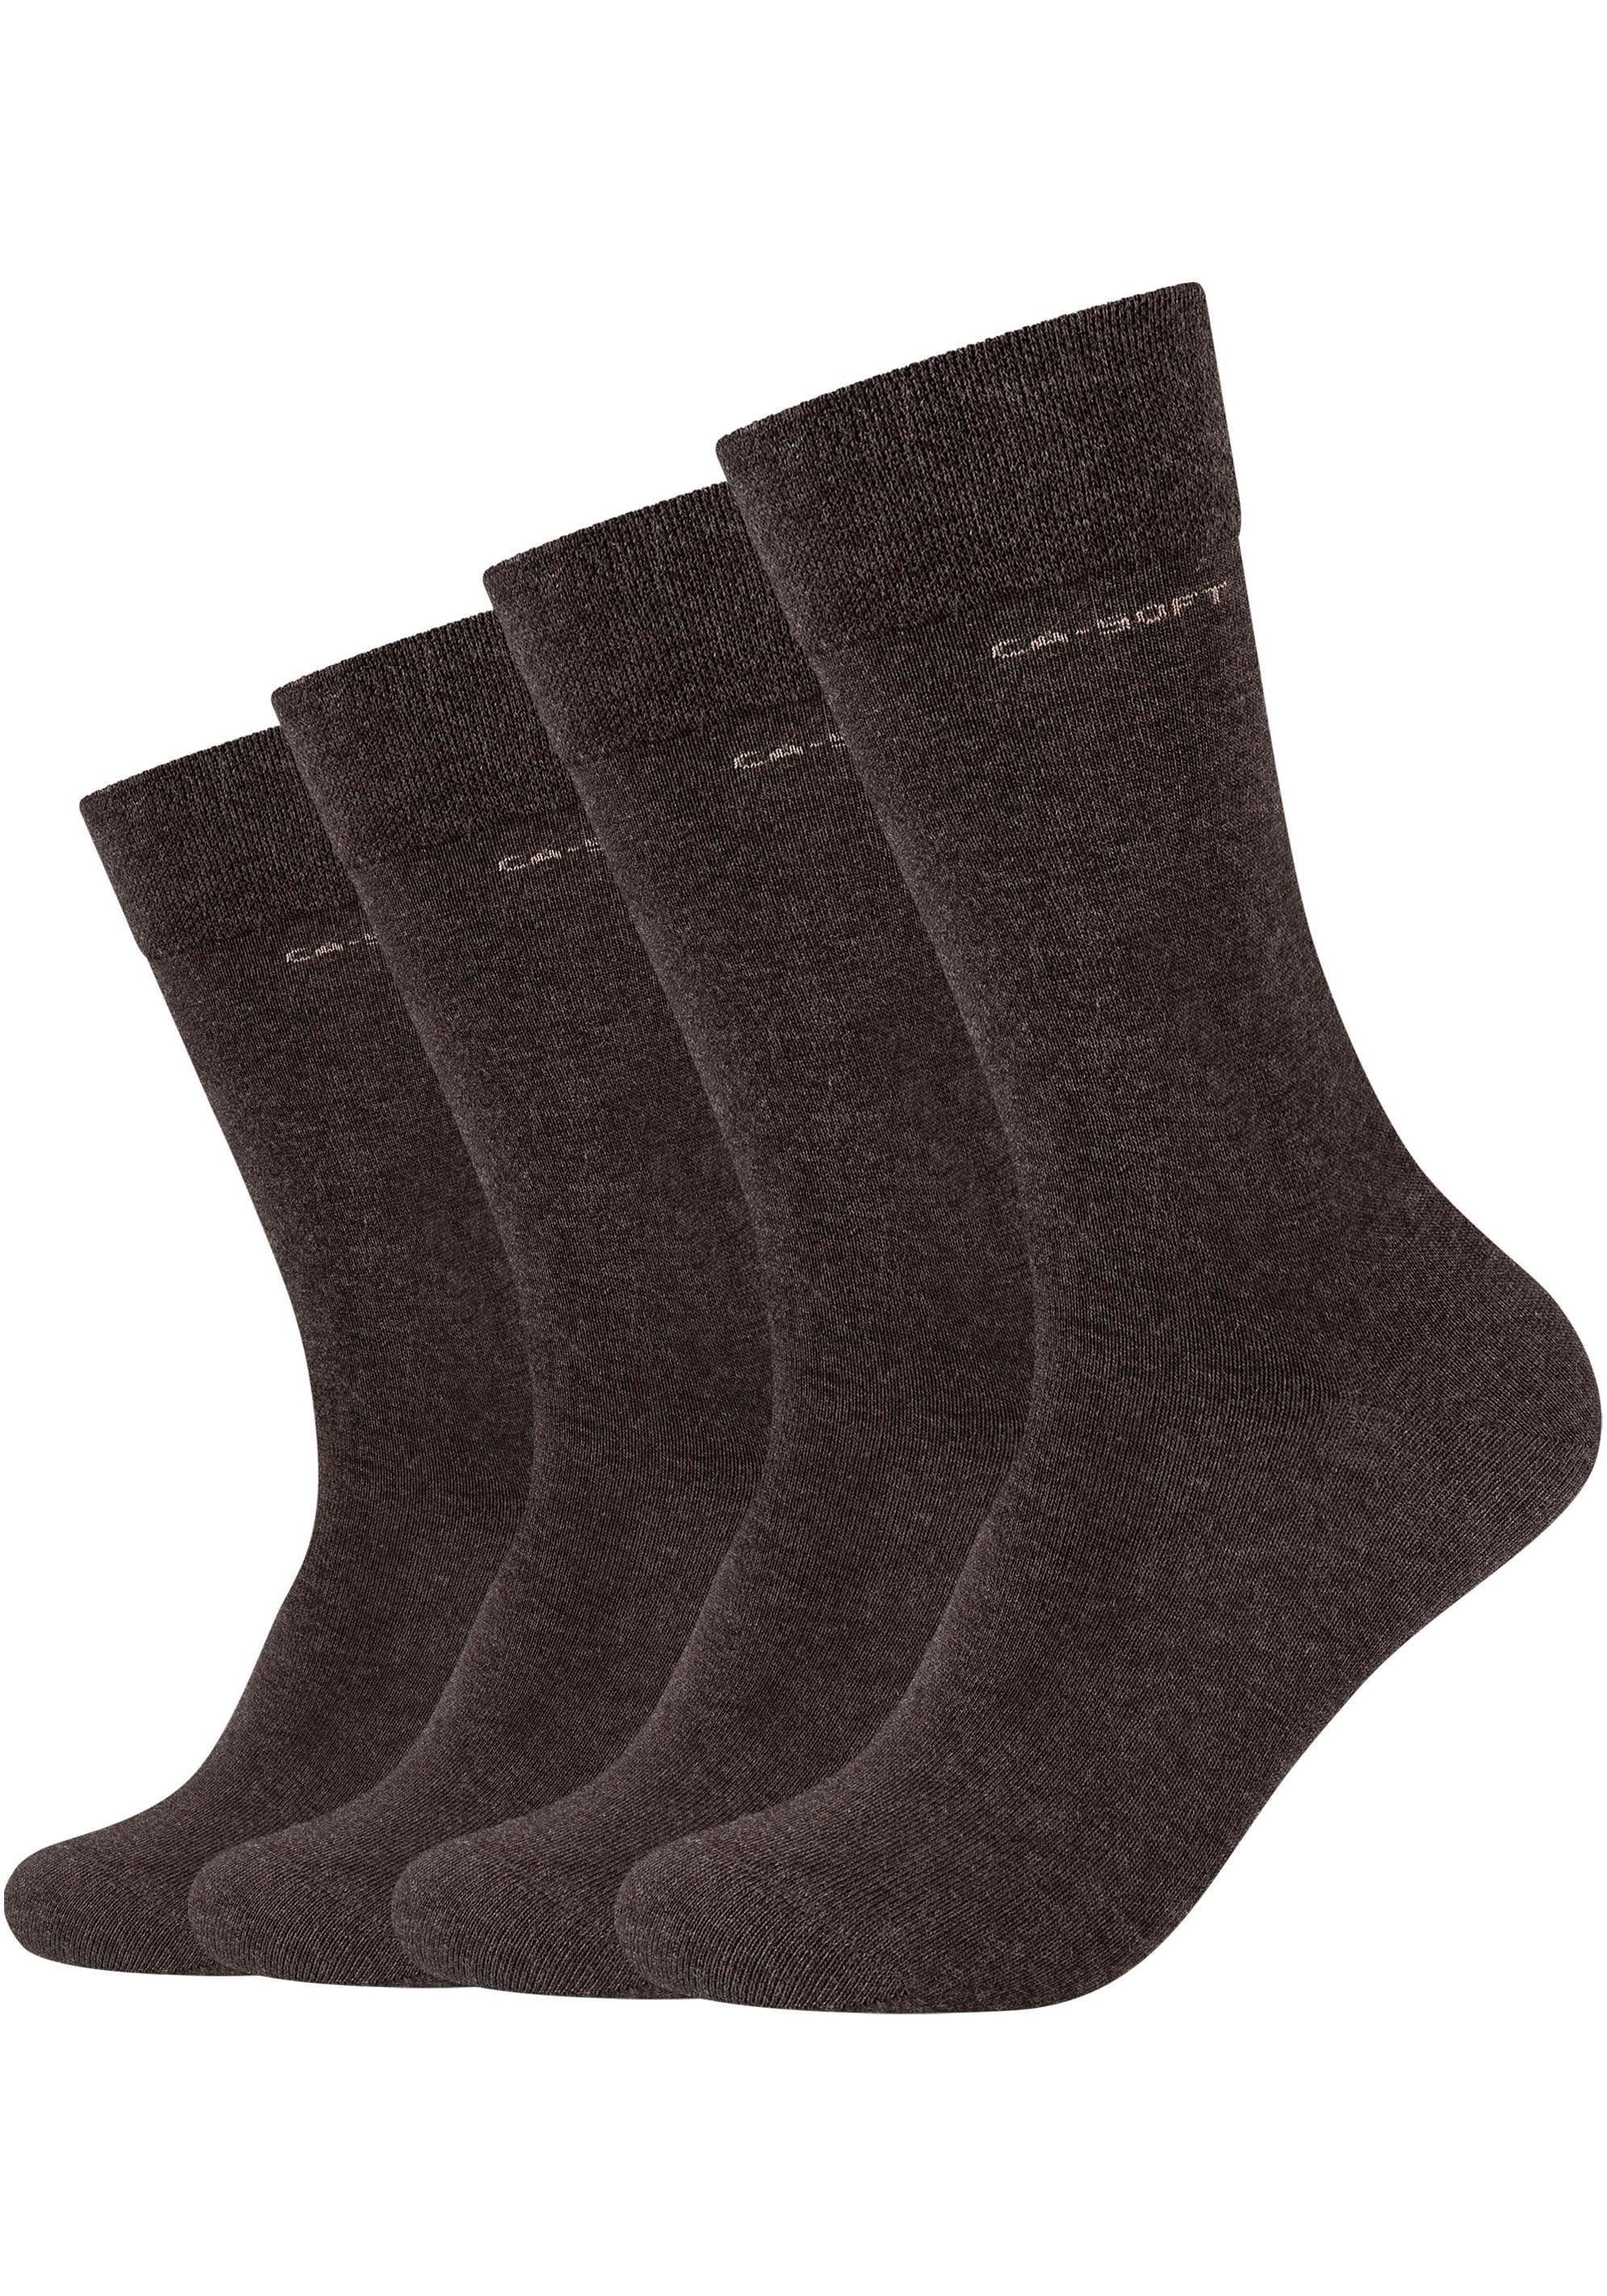 Camano Acheter Fersen- ligne (Packung, und 4 maintenant en Mit Paar), Mode verstärktem Zehenbereich Socken,